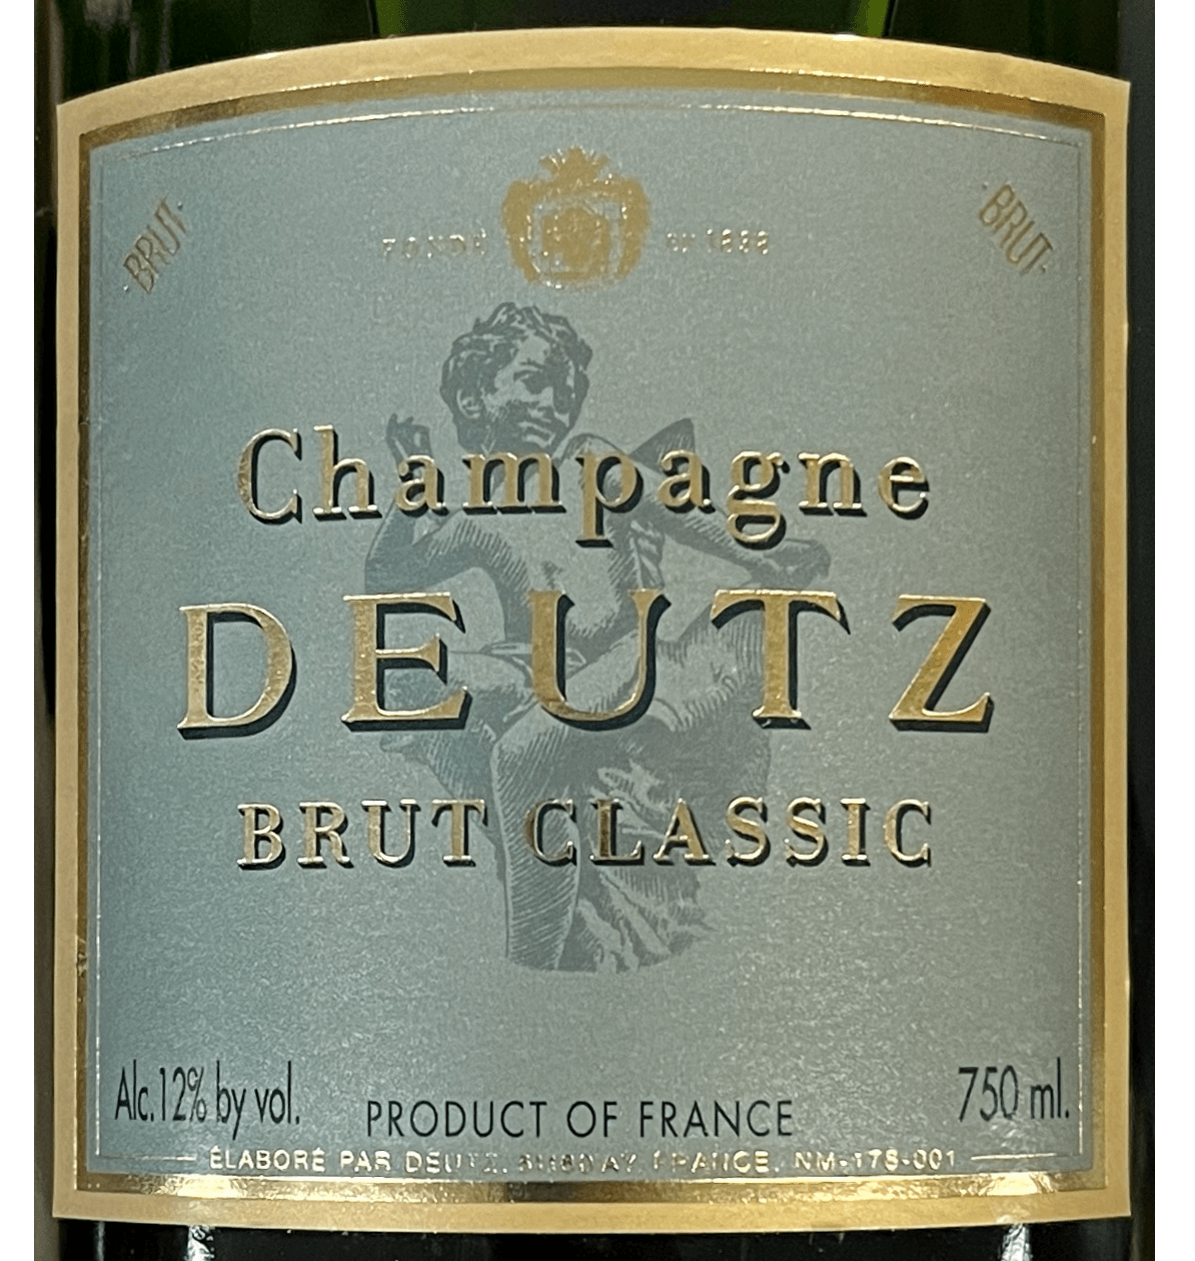 #090 - Deutz Brut Classic